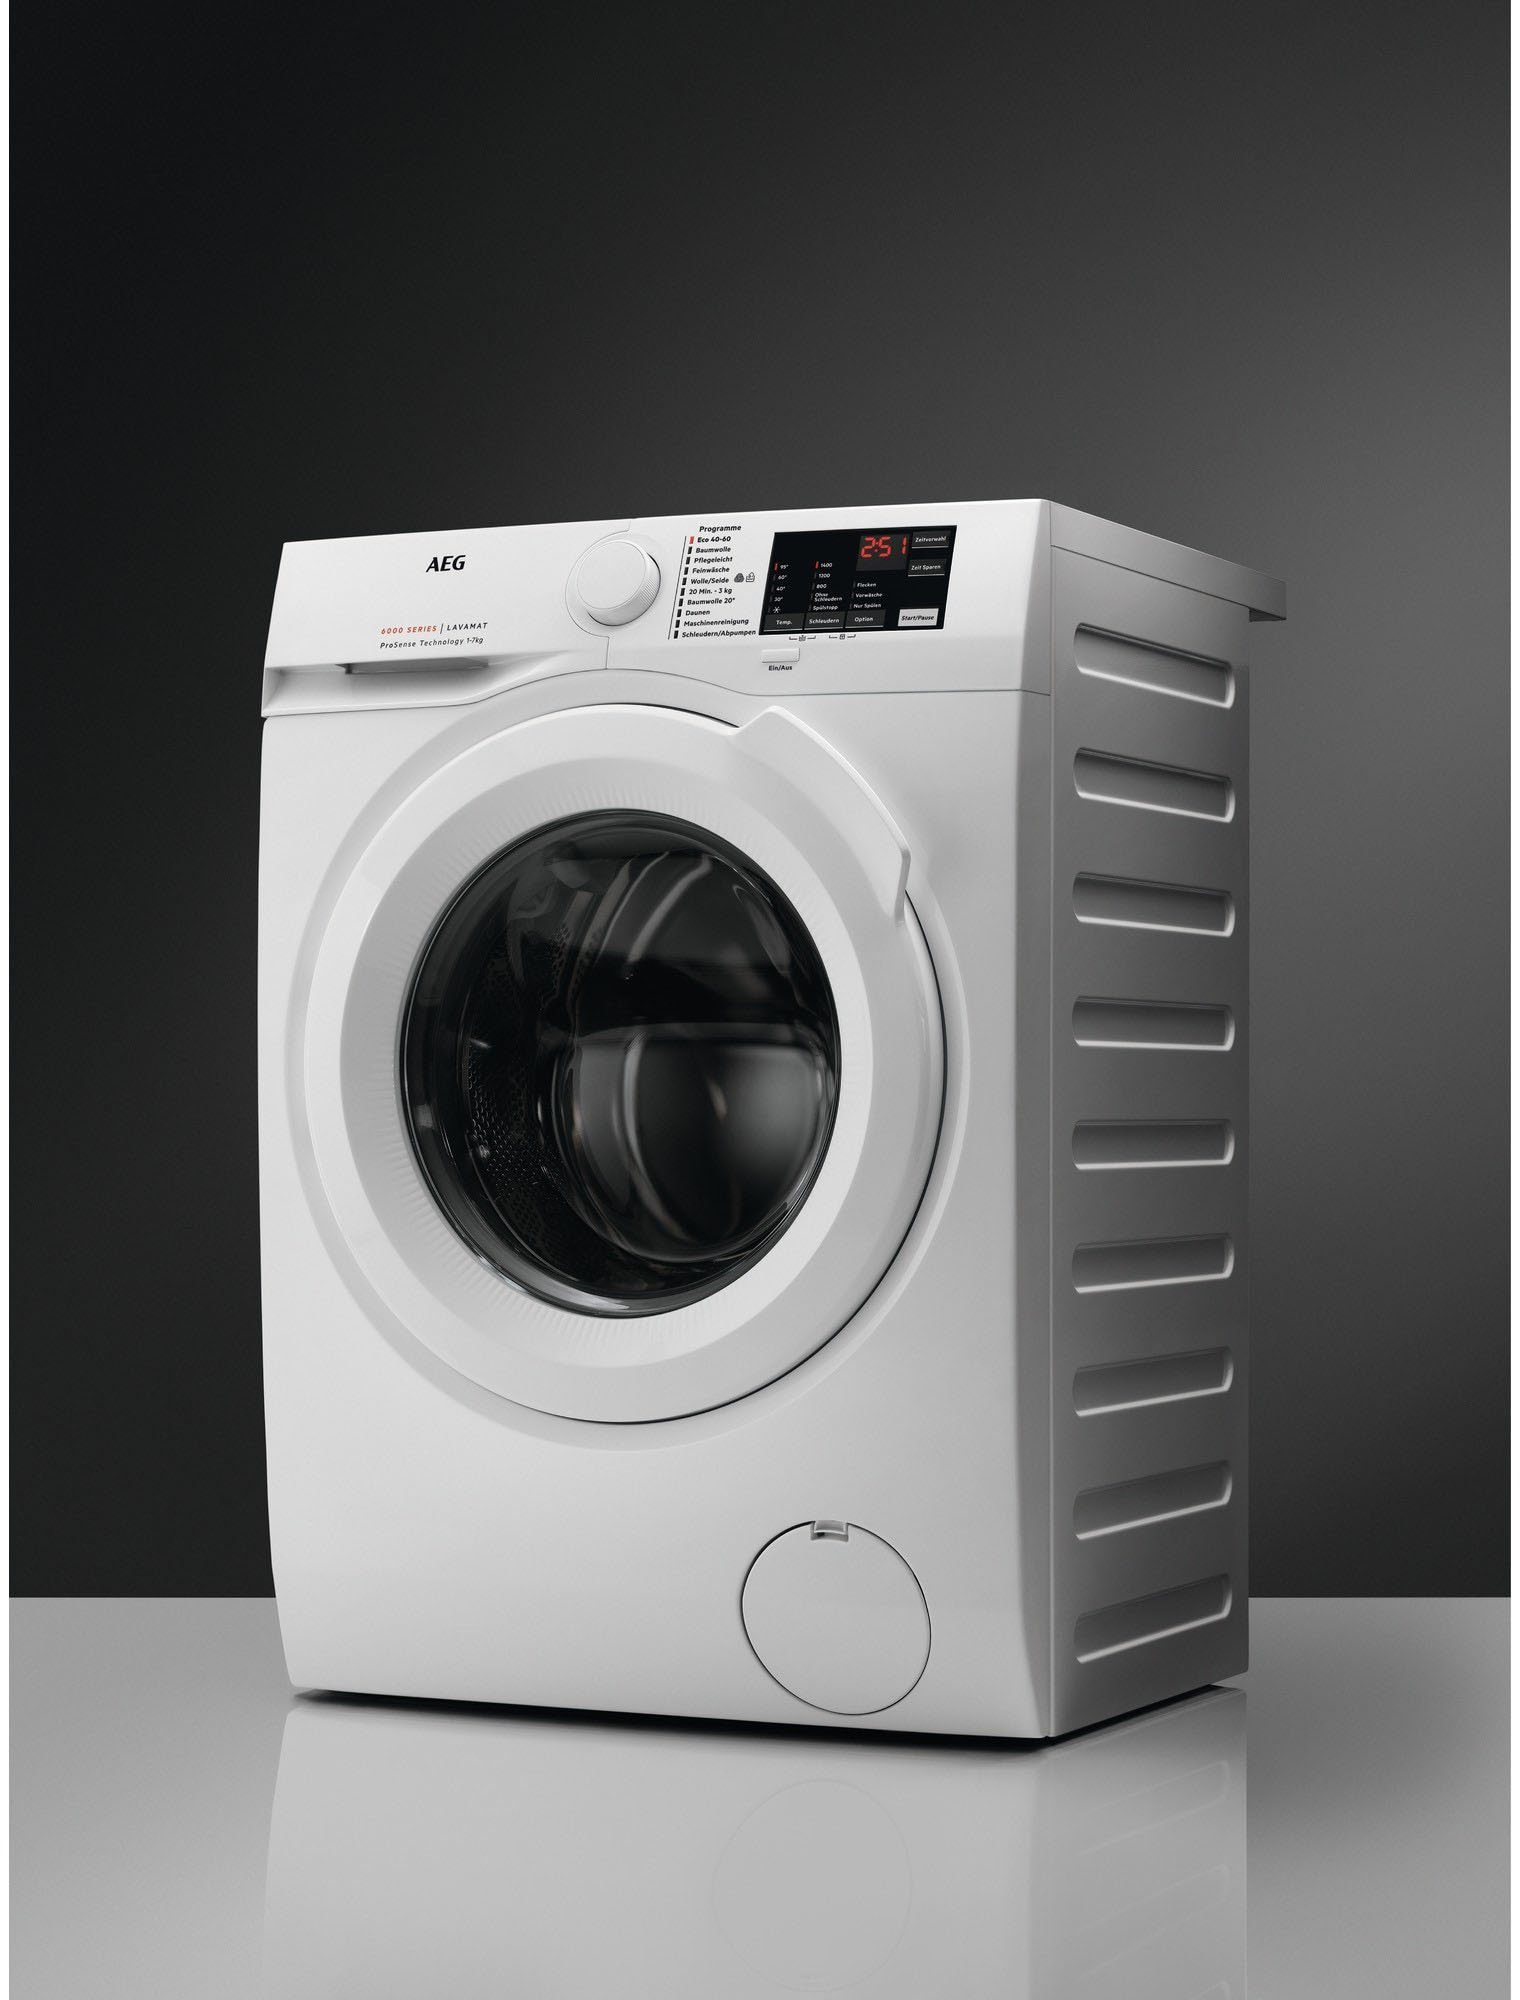 AEG Waschmaschine L6FBA51680, 8 kg, Anti-Allergie U/min, mit 1600 Hygiene-/ Programm Dampf